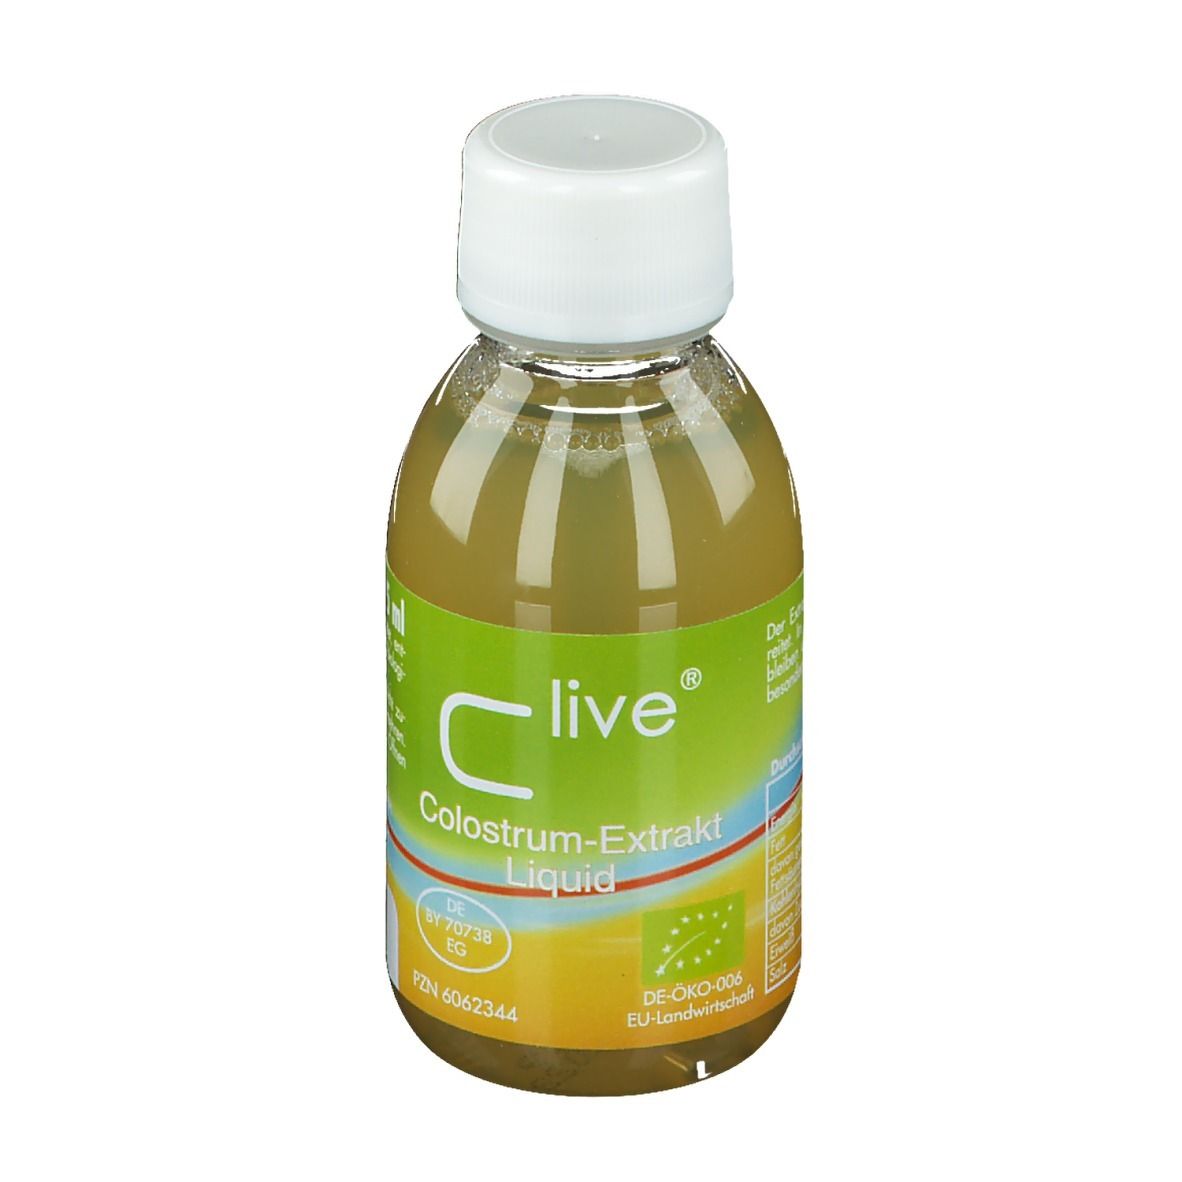 Clive Colostrum-Extrakt Liquid